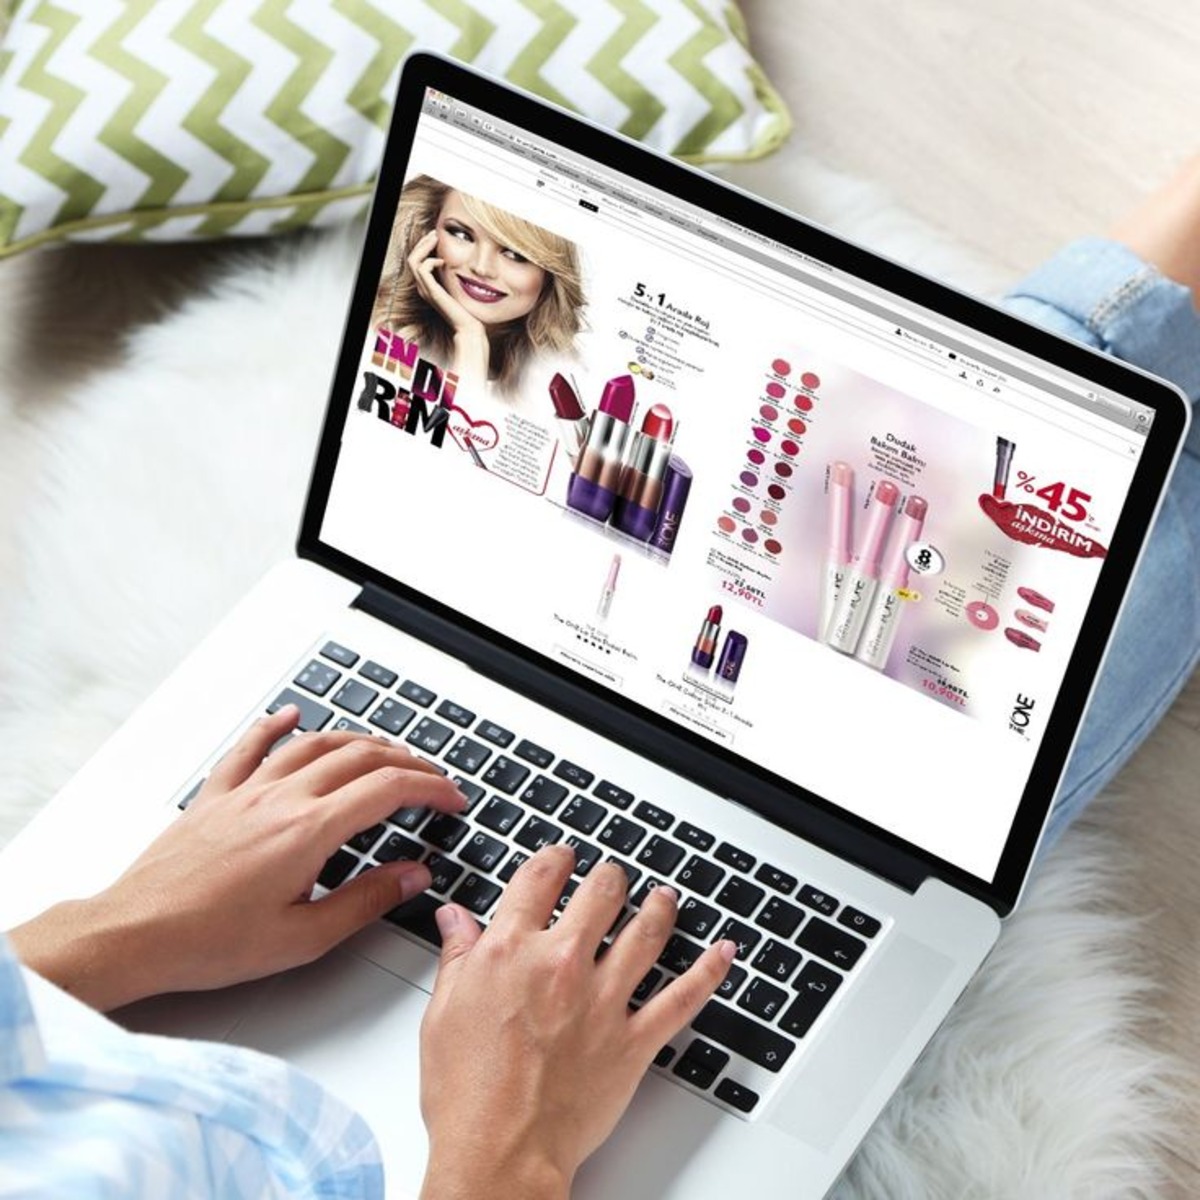 Online Beauty Business: Start an Online Beauty Supply Store